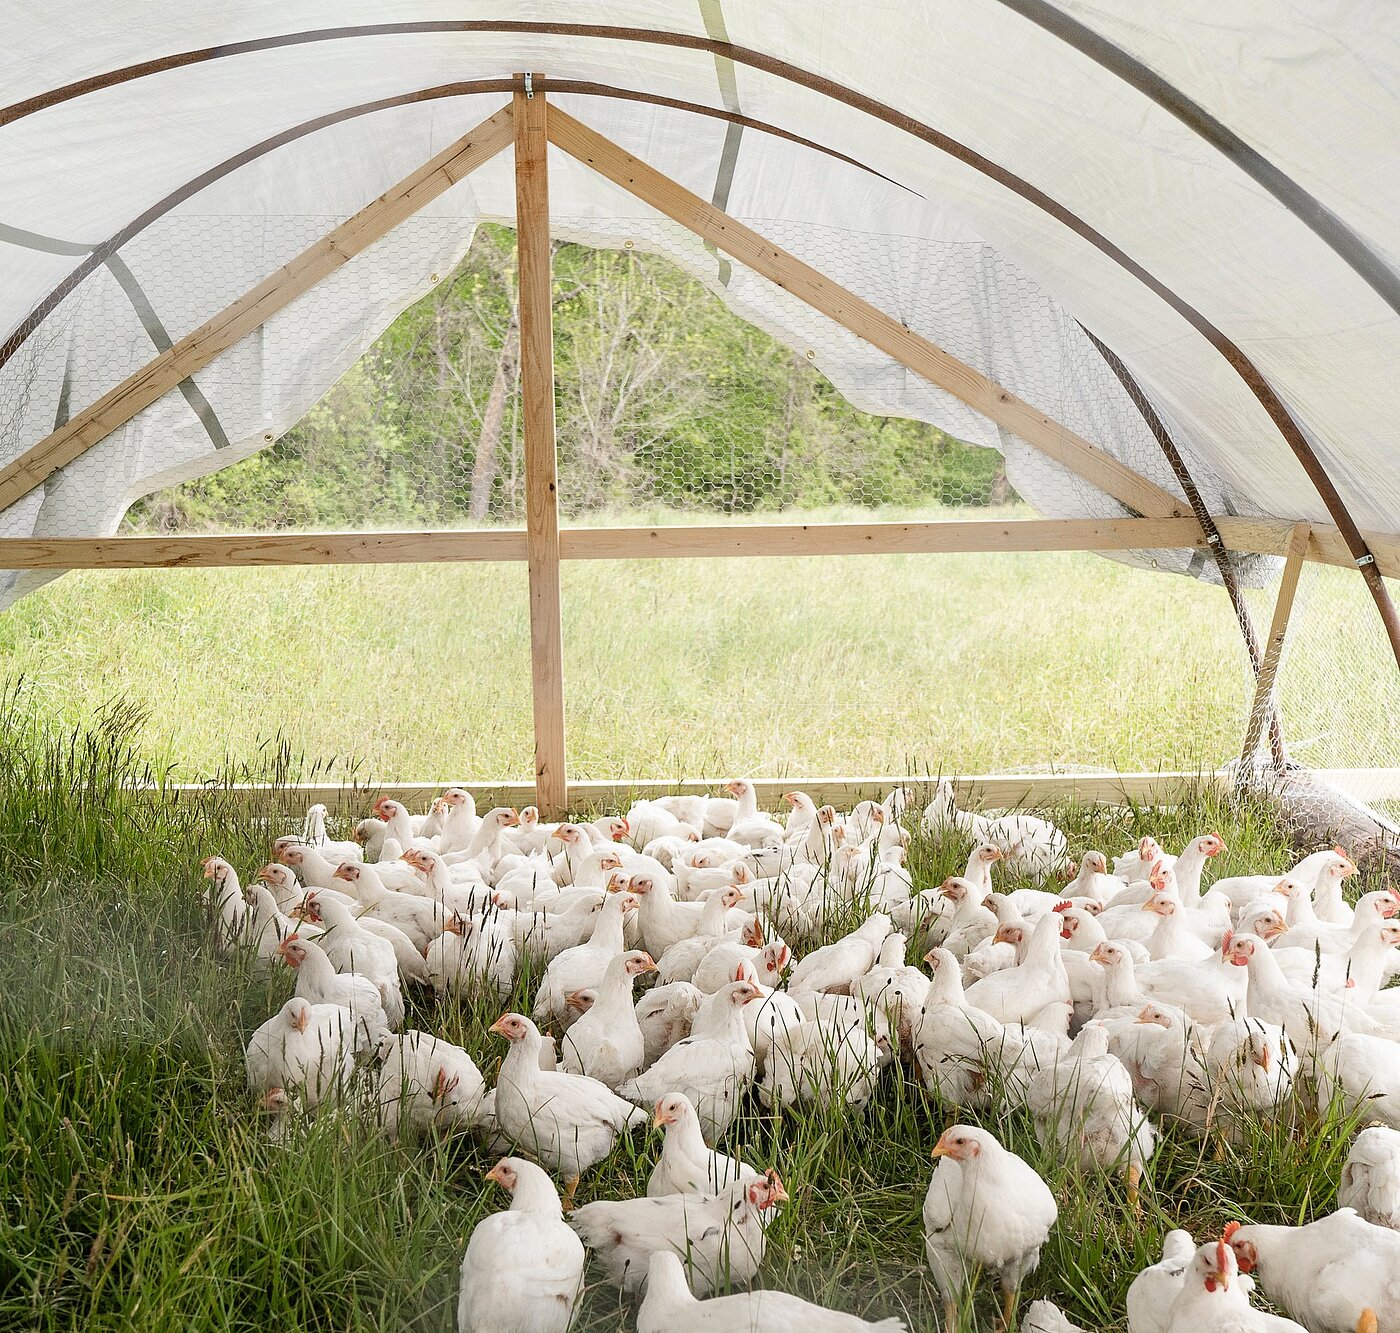 Das Bild zeigt Hühner in einem offenen Stall auf der Wiese